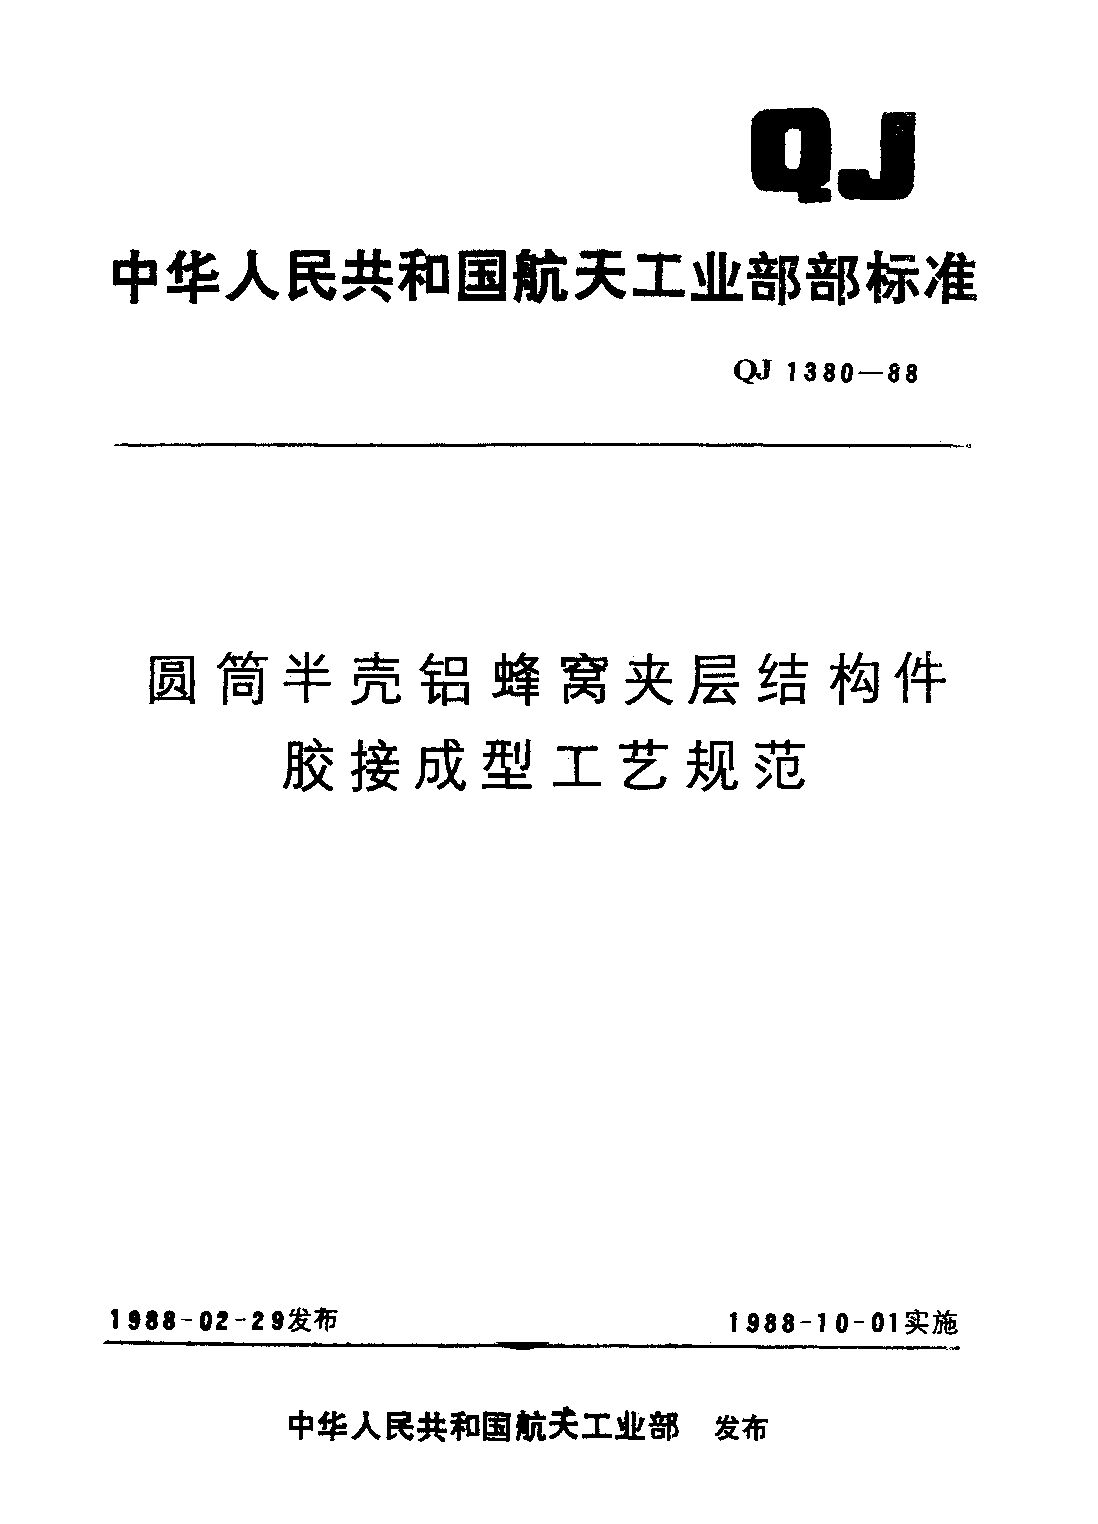 QJ 1380-1988封面图